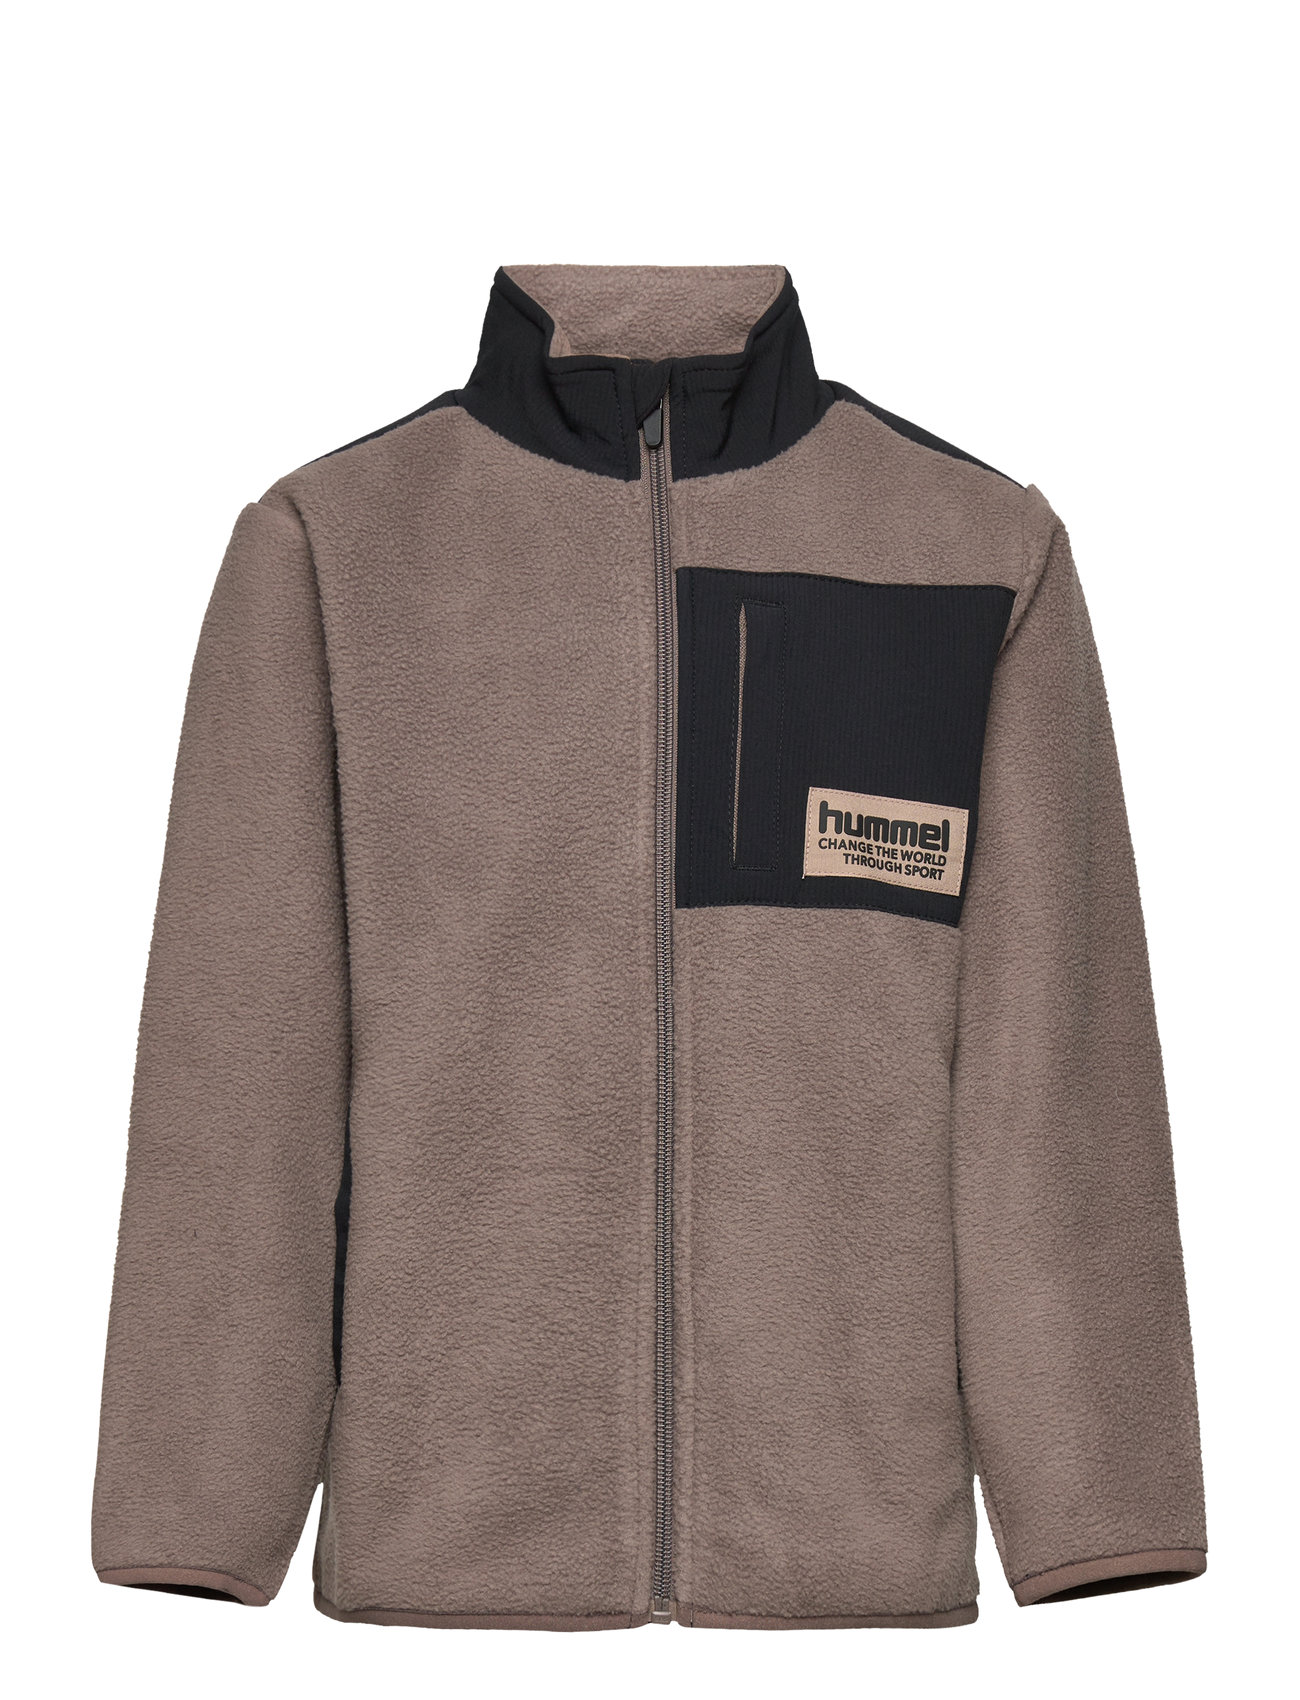 Hummel Hmldare Fleece Jacket - Fleece-Kleidung Boozt.com Switzerland 